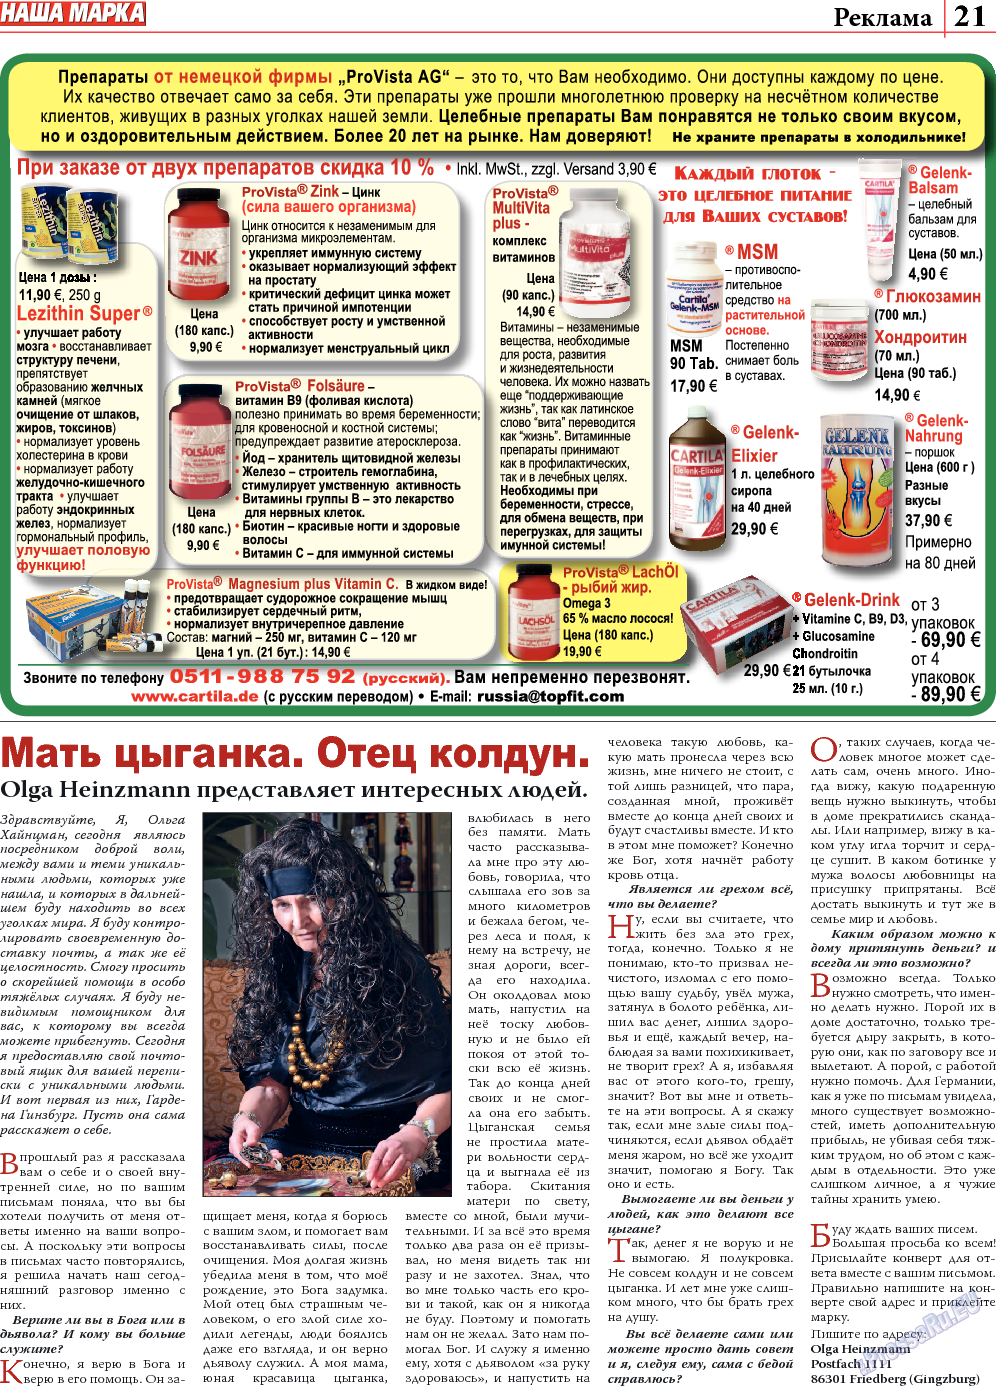 Наша марка (газета). 2013 год, номер 10, стр. 21